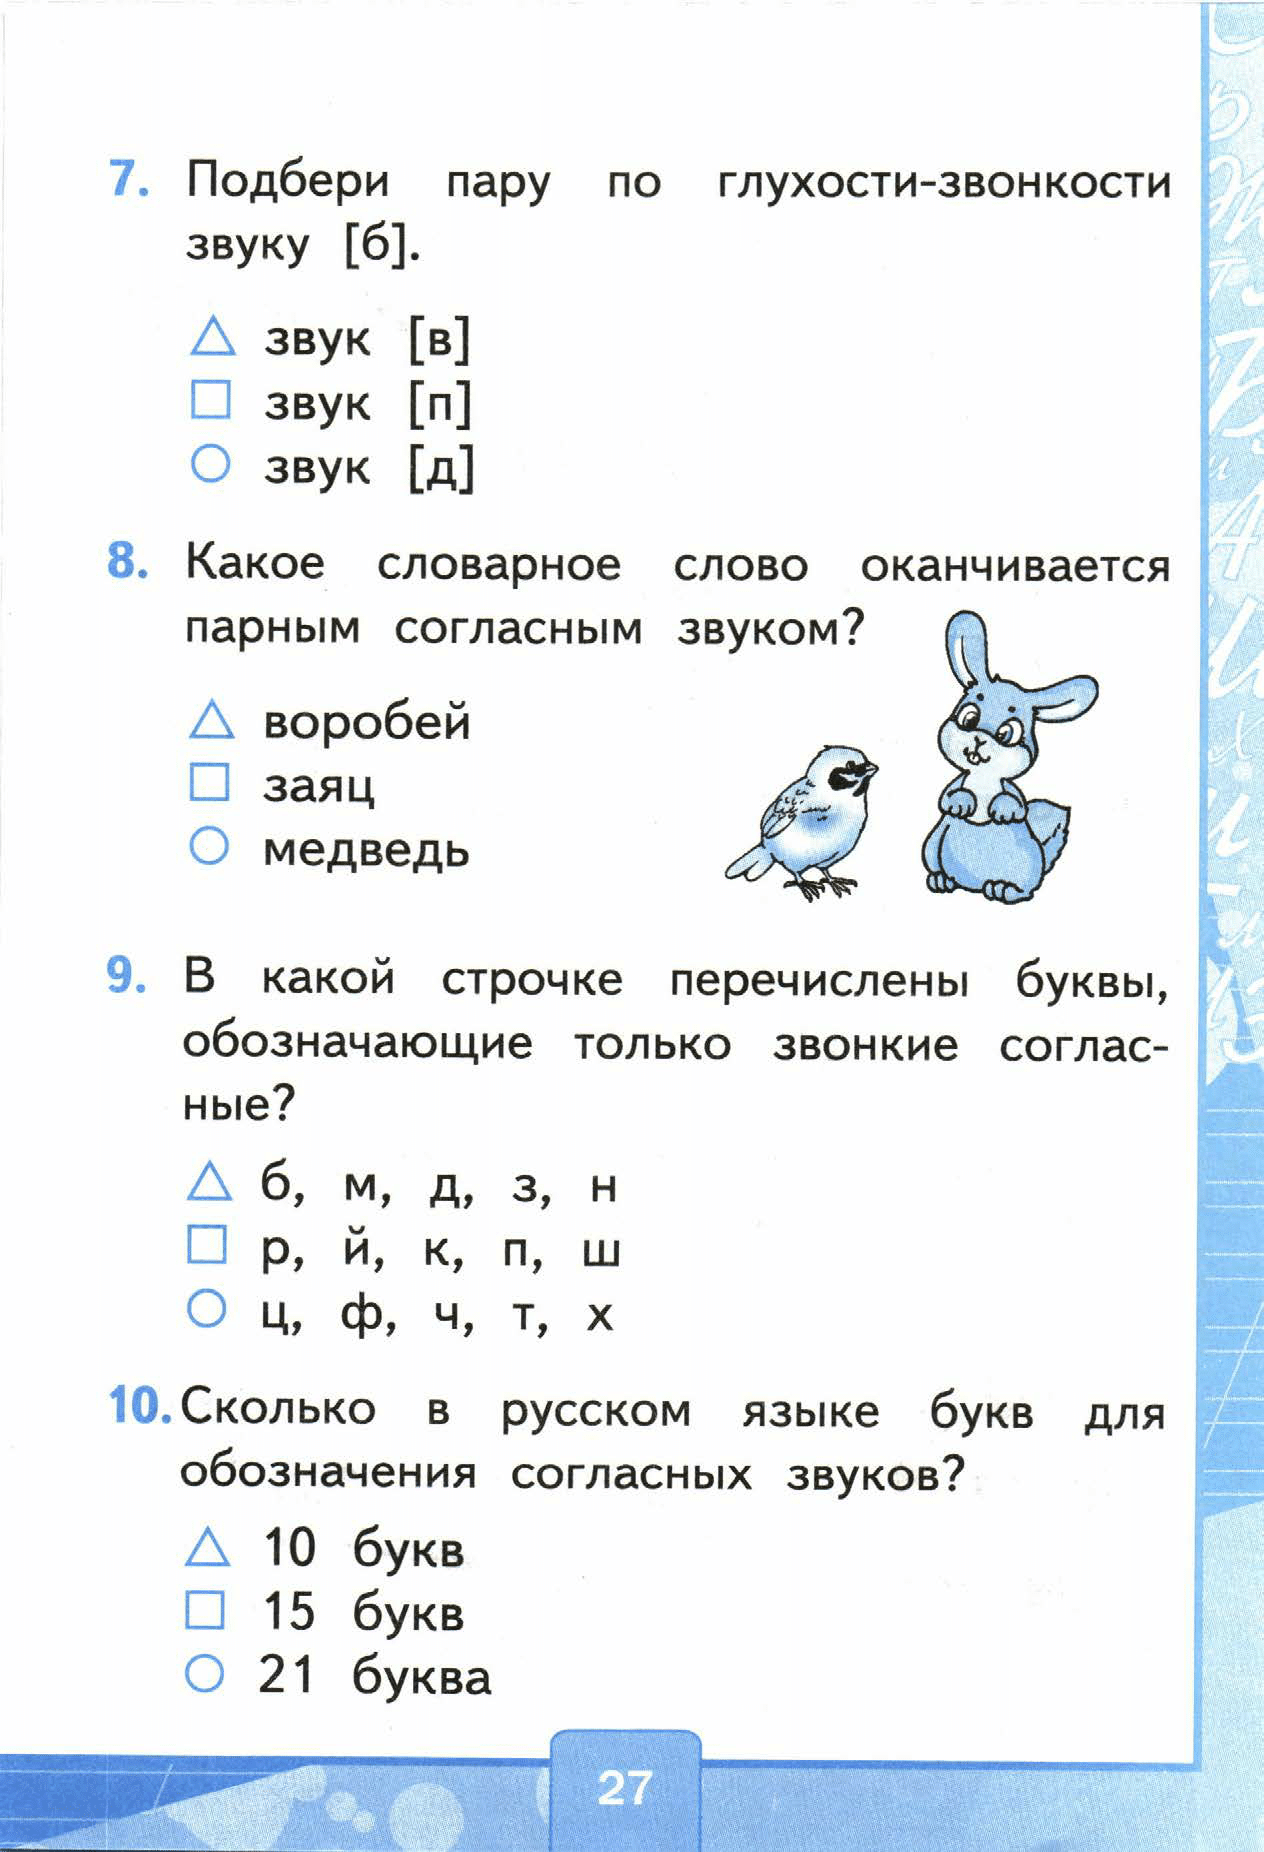 Страница (упражнение) 27 учебника. Страница 27 ГДЗ решебник тестов по русскому языку Тихомирова